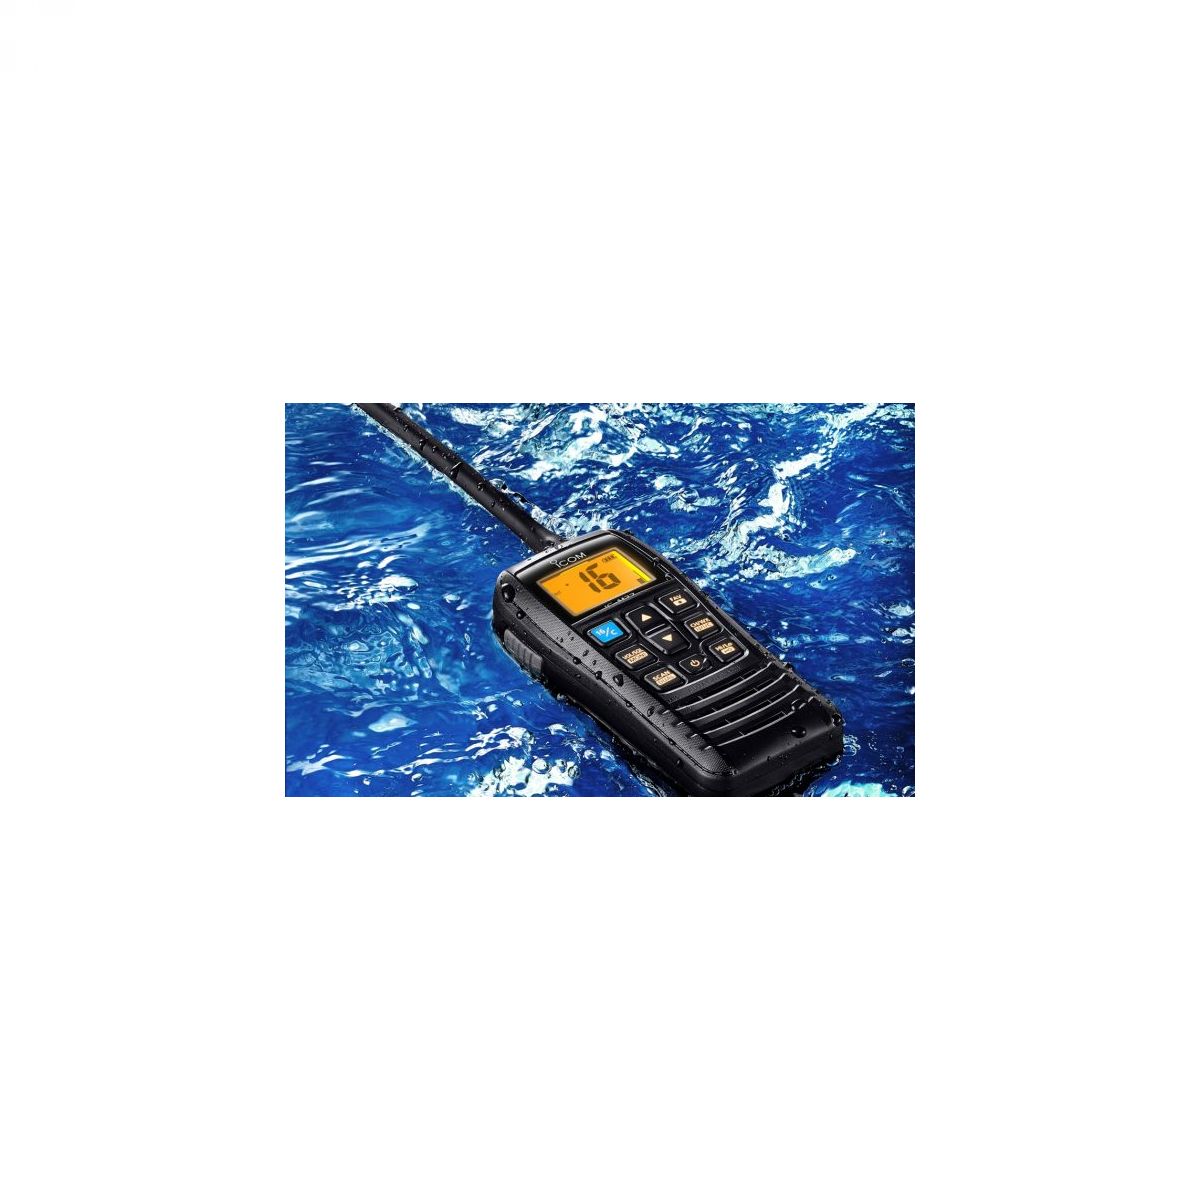 Icom IC-M37E VHF prijenosna radijska postaja